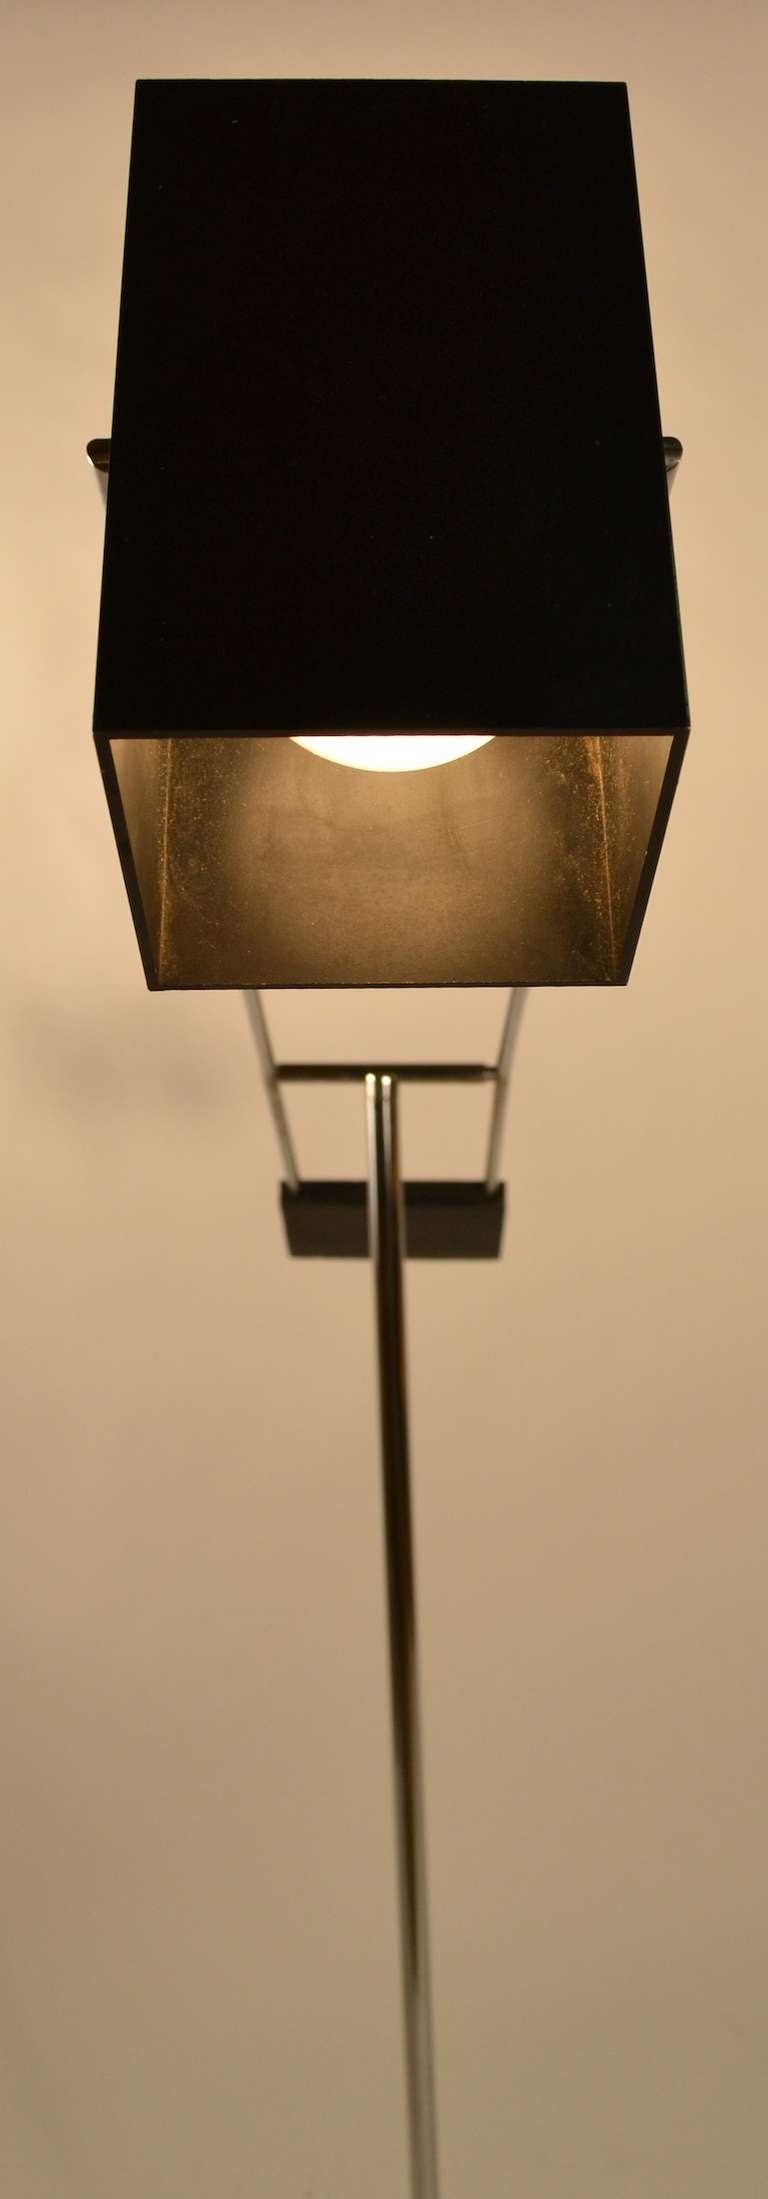 black chrome floor lamp